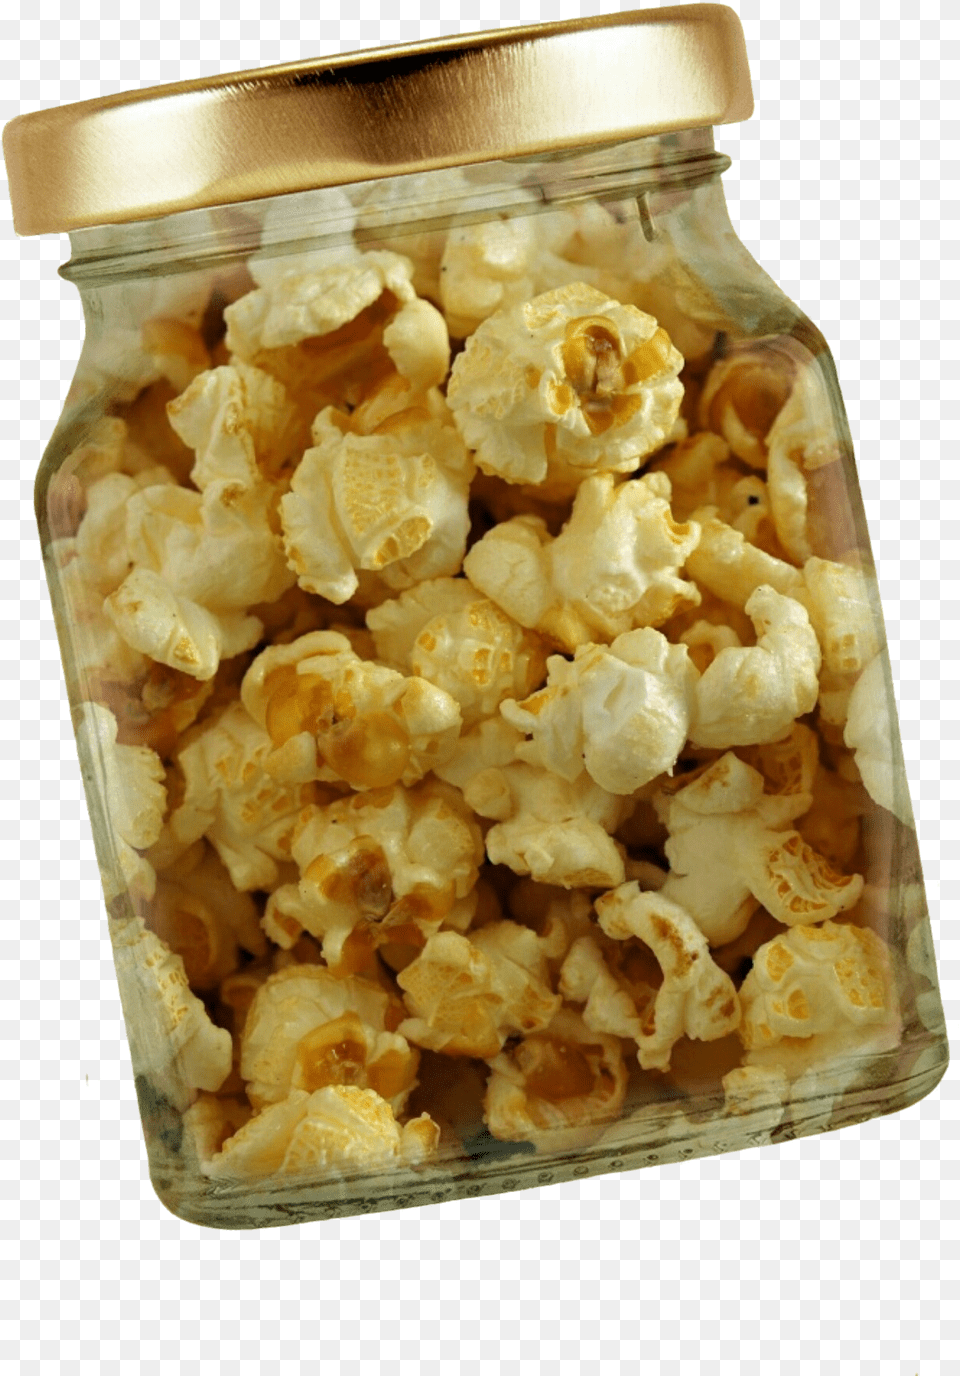 Popcorn In Jar Image Popcorn, Food, Snack Free Transparent Png